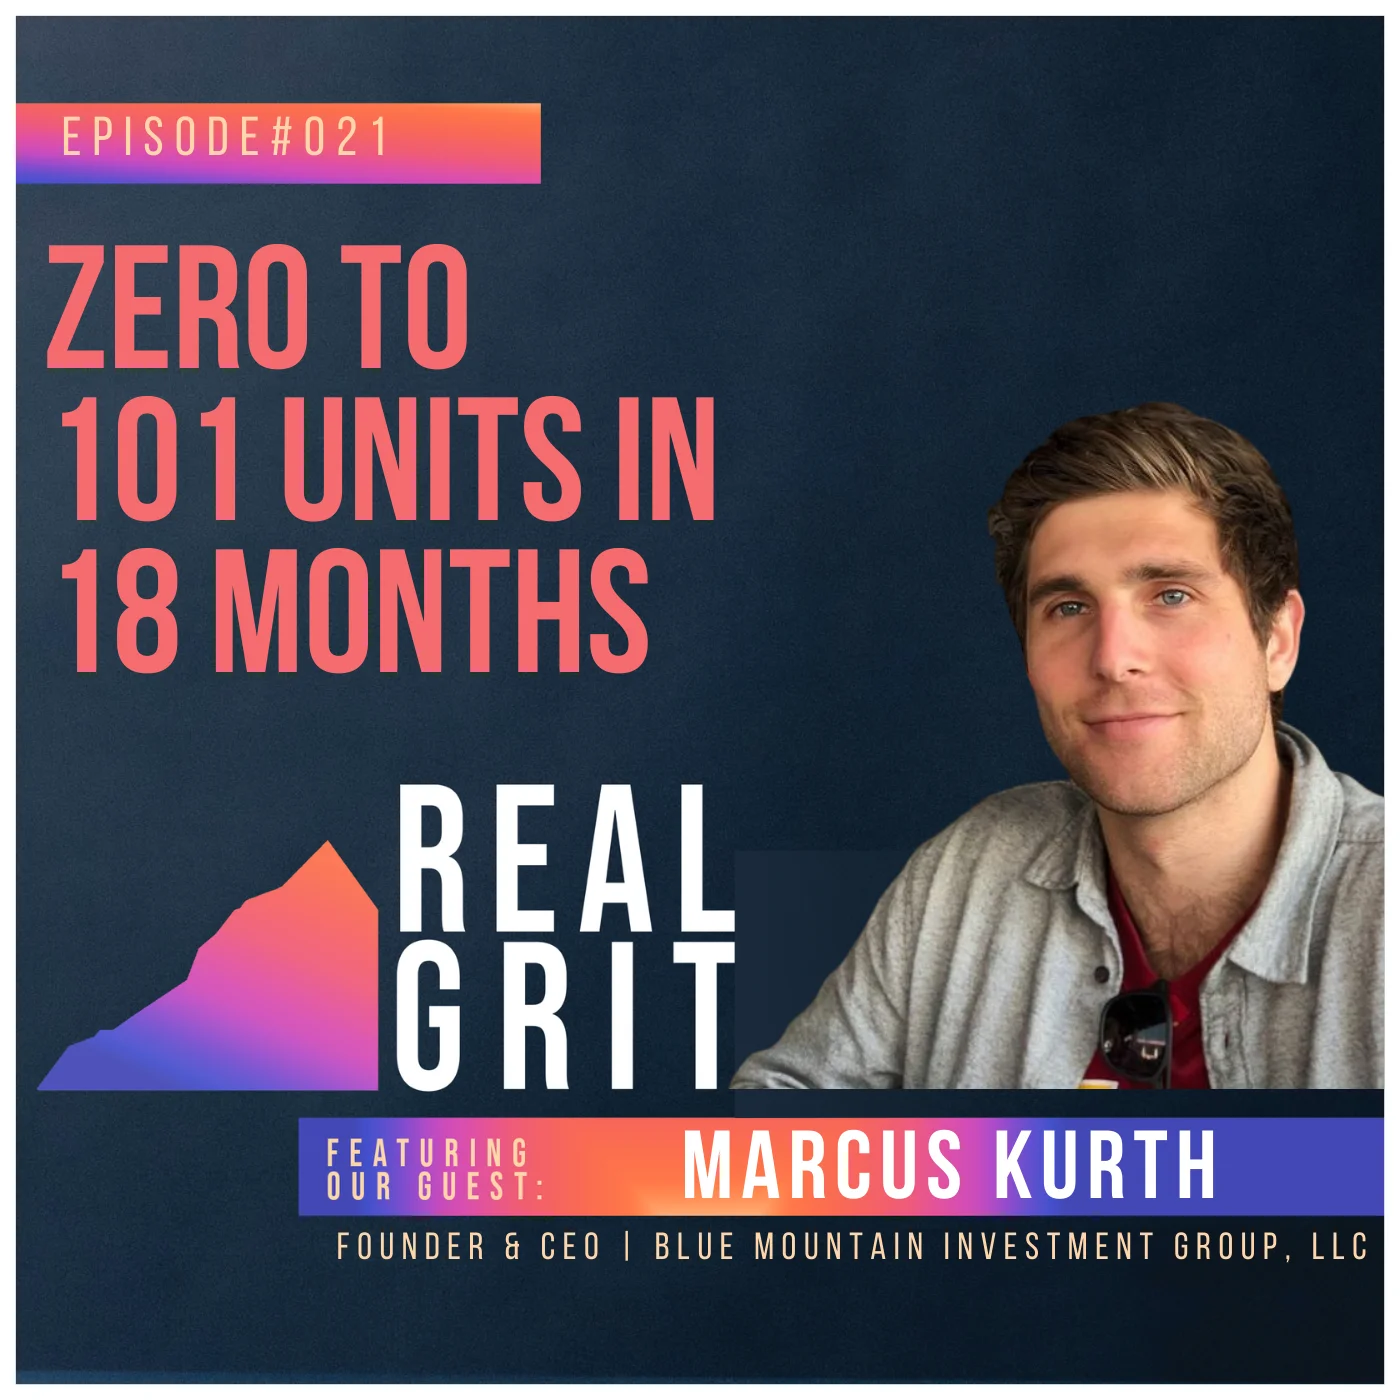 Marcus Kurth podcast promo image